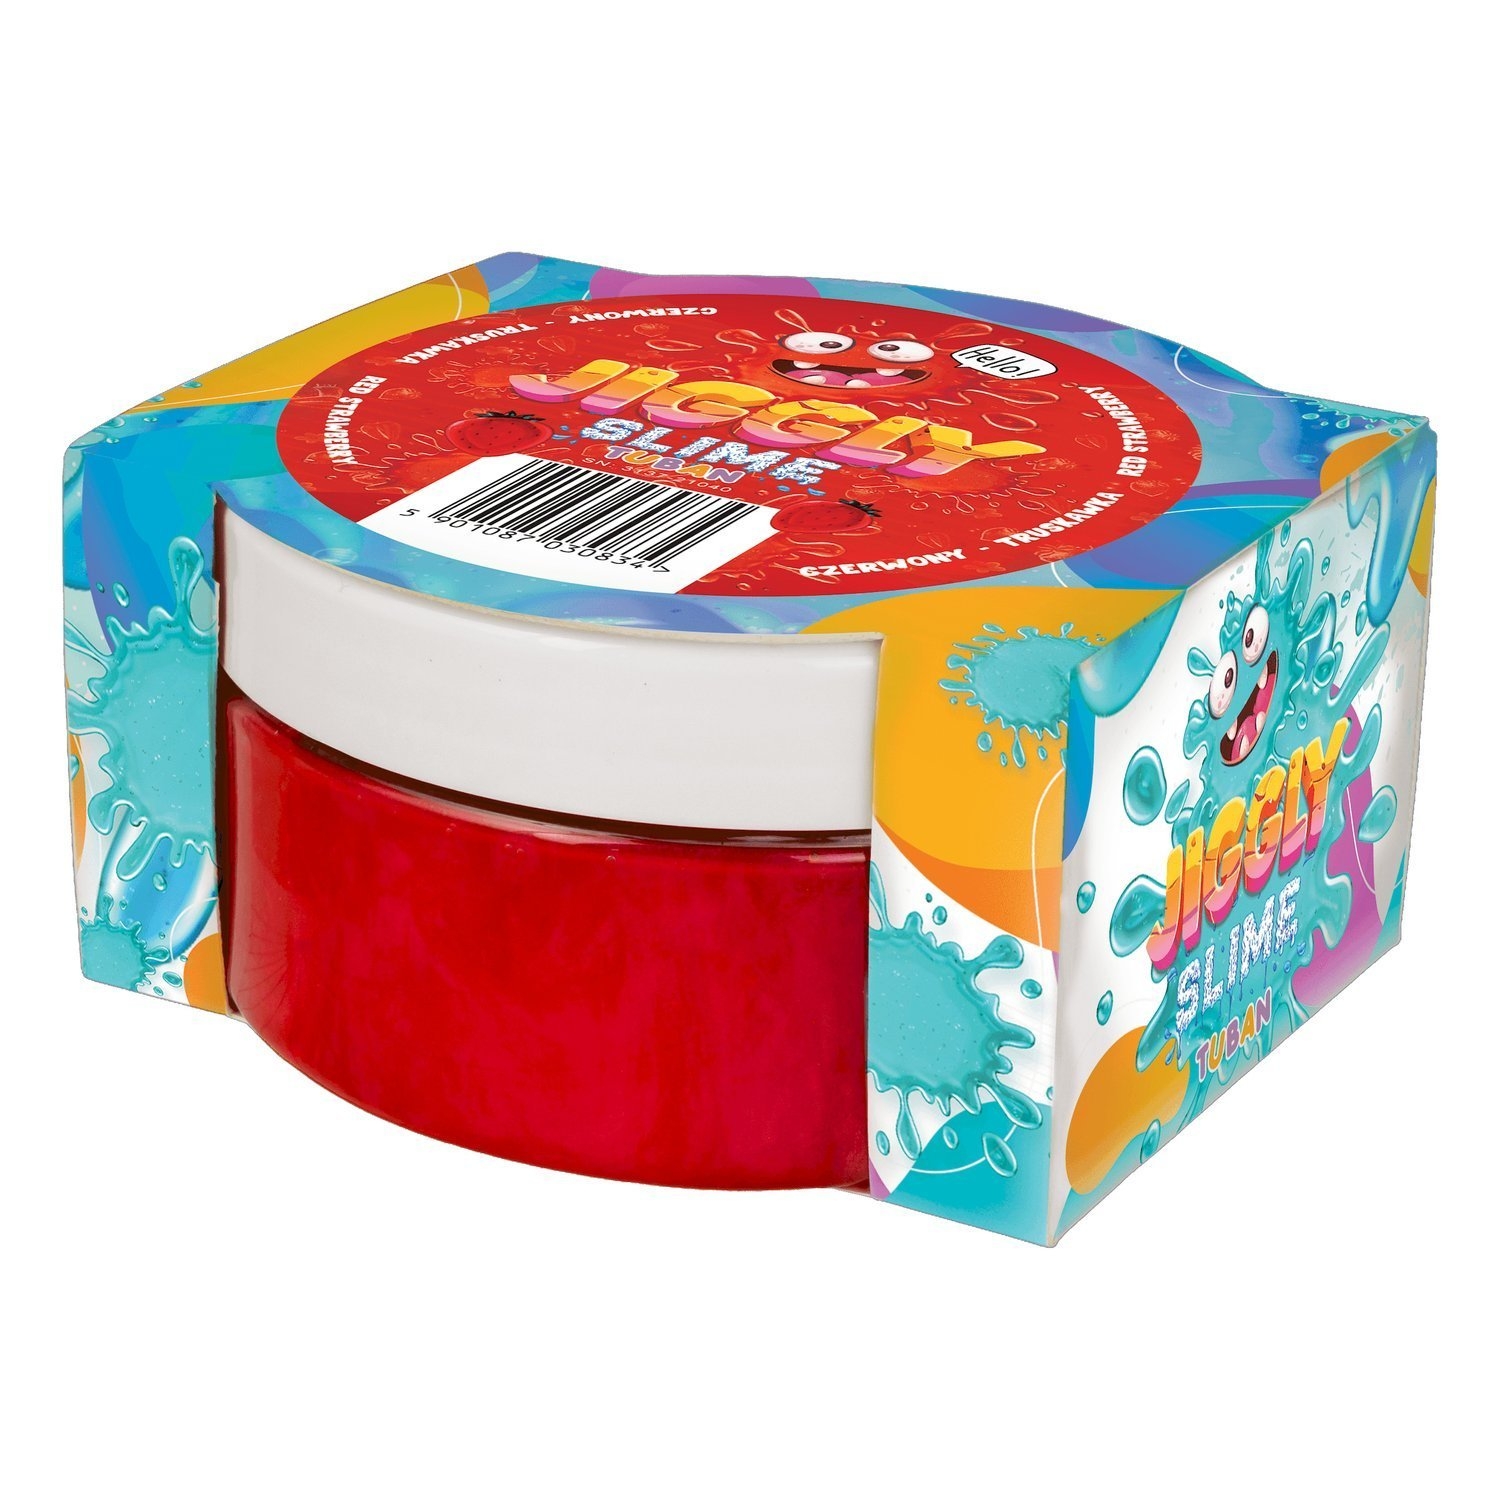 Tuban, Jiggly Slime zapachowy - Czerwona truskawka 200g (TU 3586)